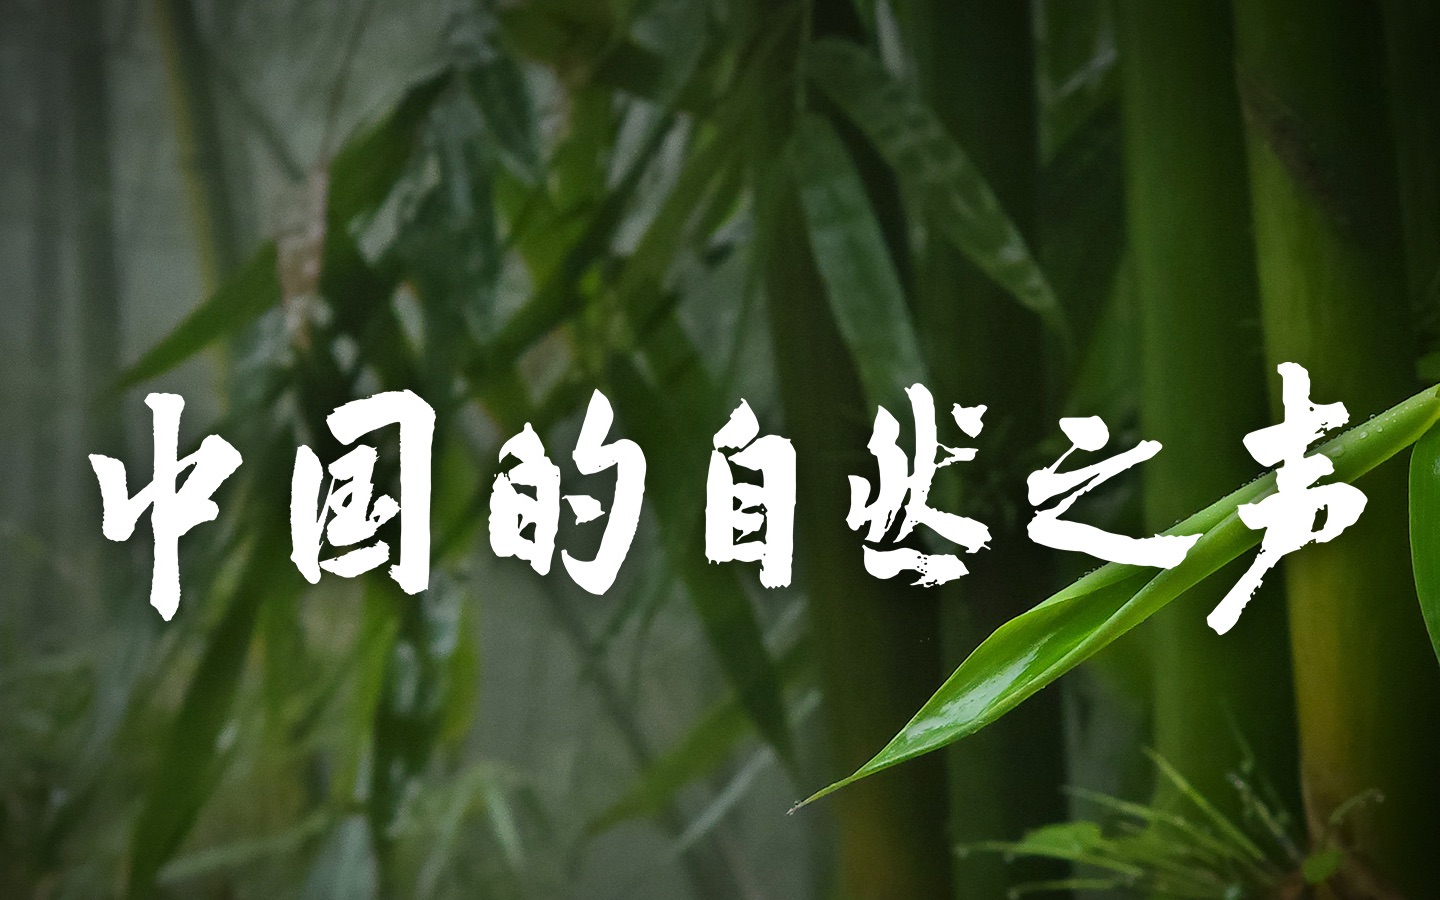 欢迎来到「竹子」的奇妙世界